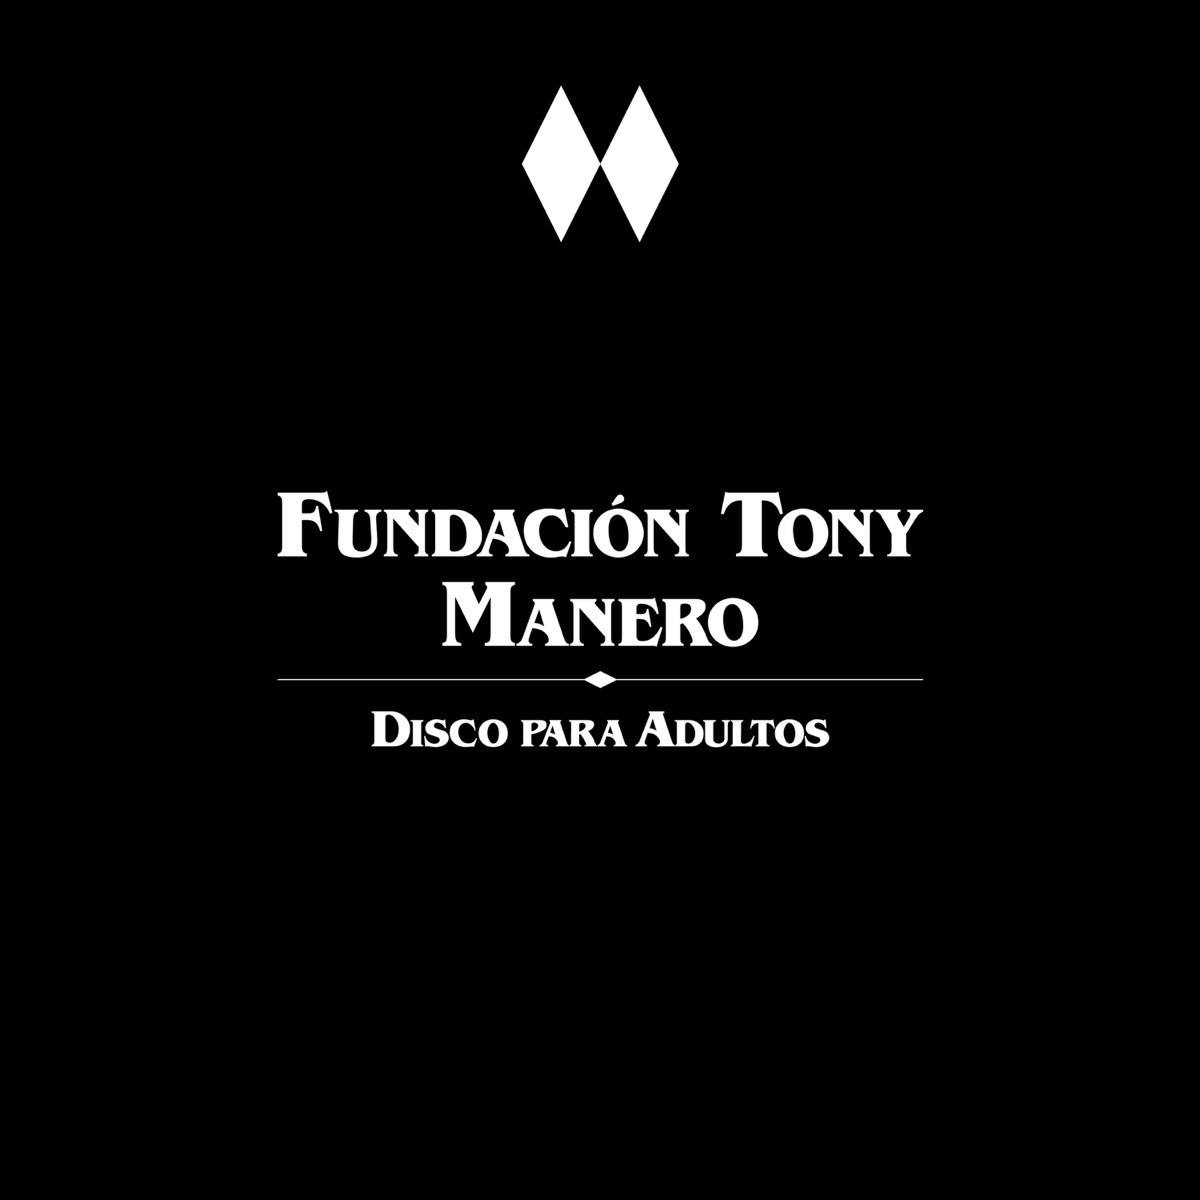 Corrección álbum de recortes Nylon Disco para Adultos by Fundación Tony Manero on Apple Music